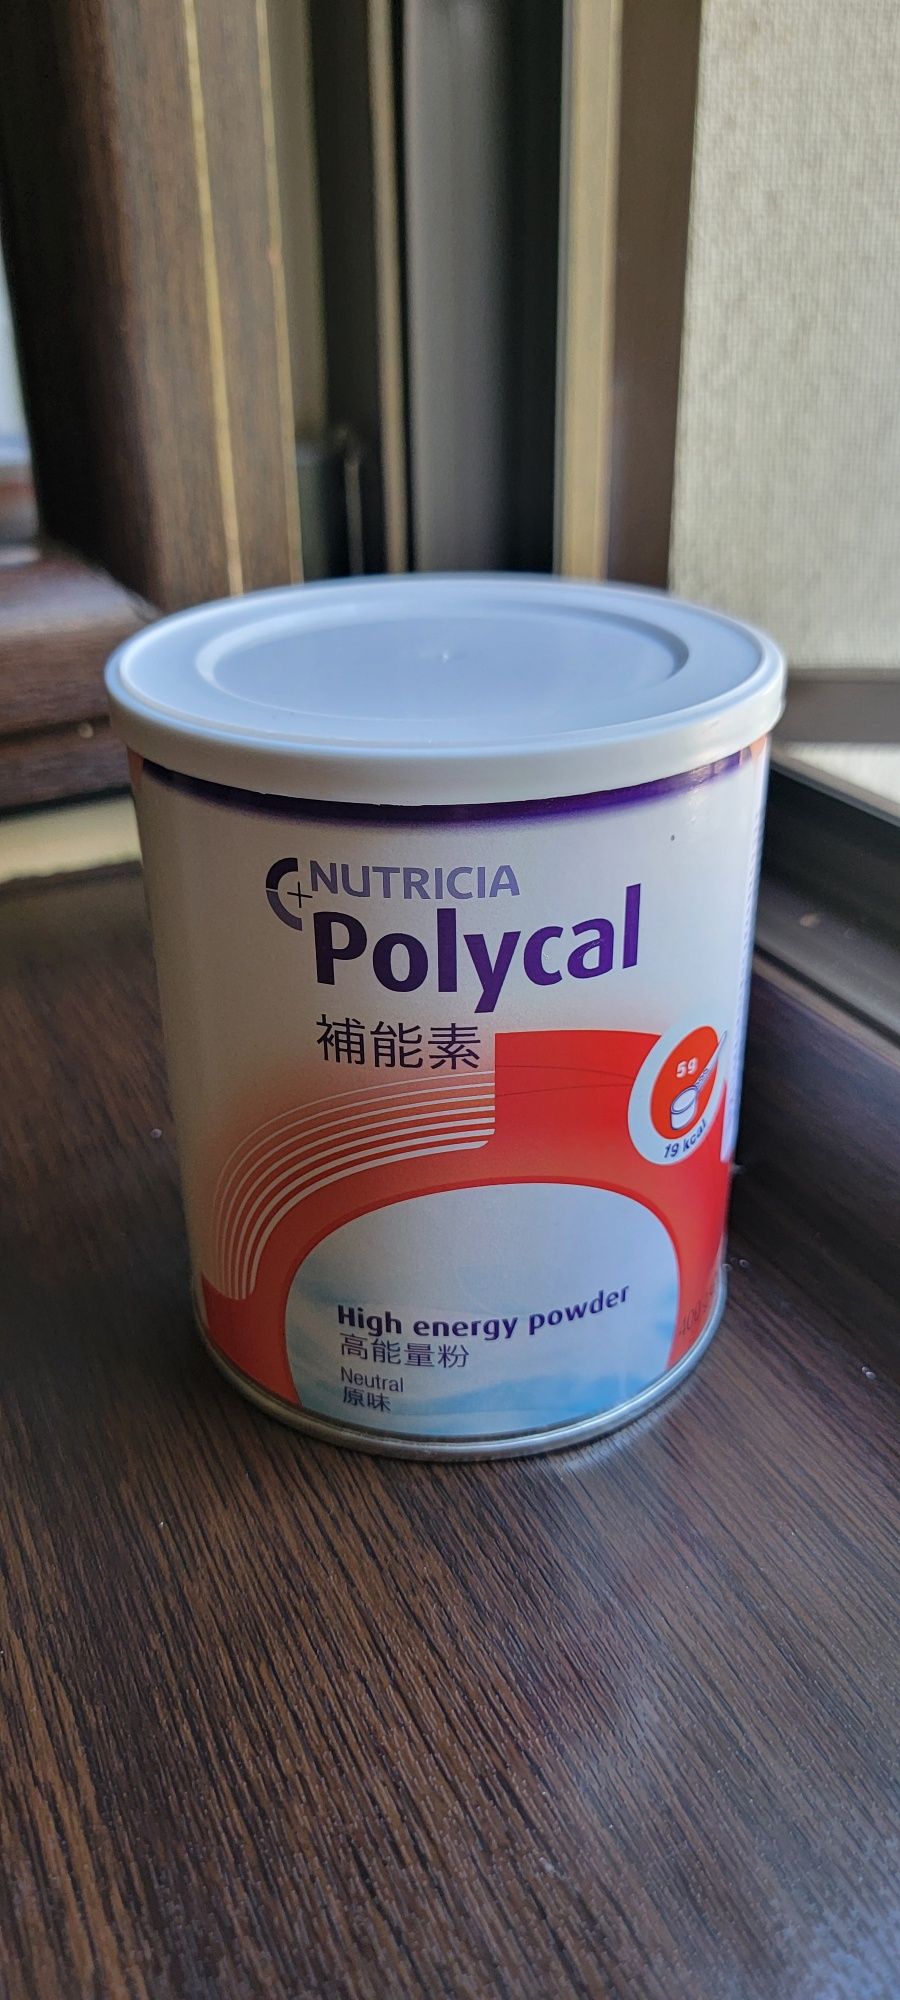 Polycal, 400 g, Nutricia
Polycal, 400 g, Nutricia